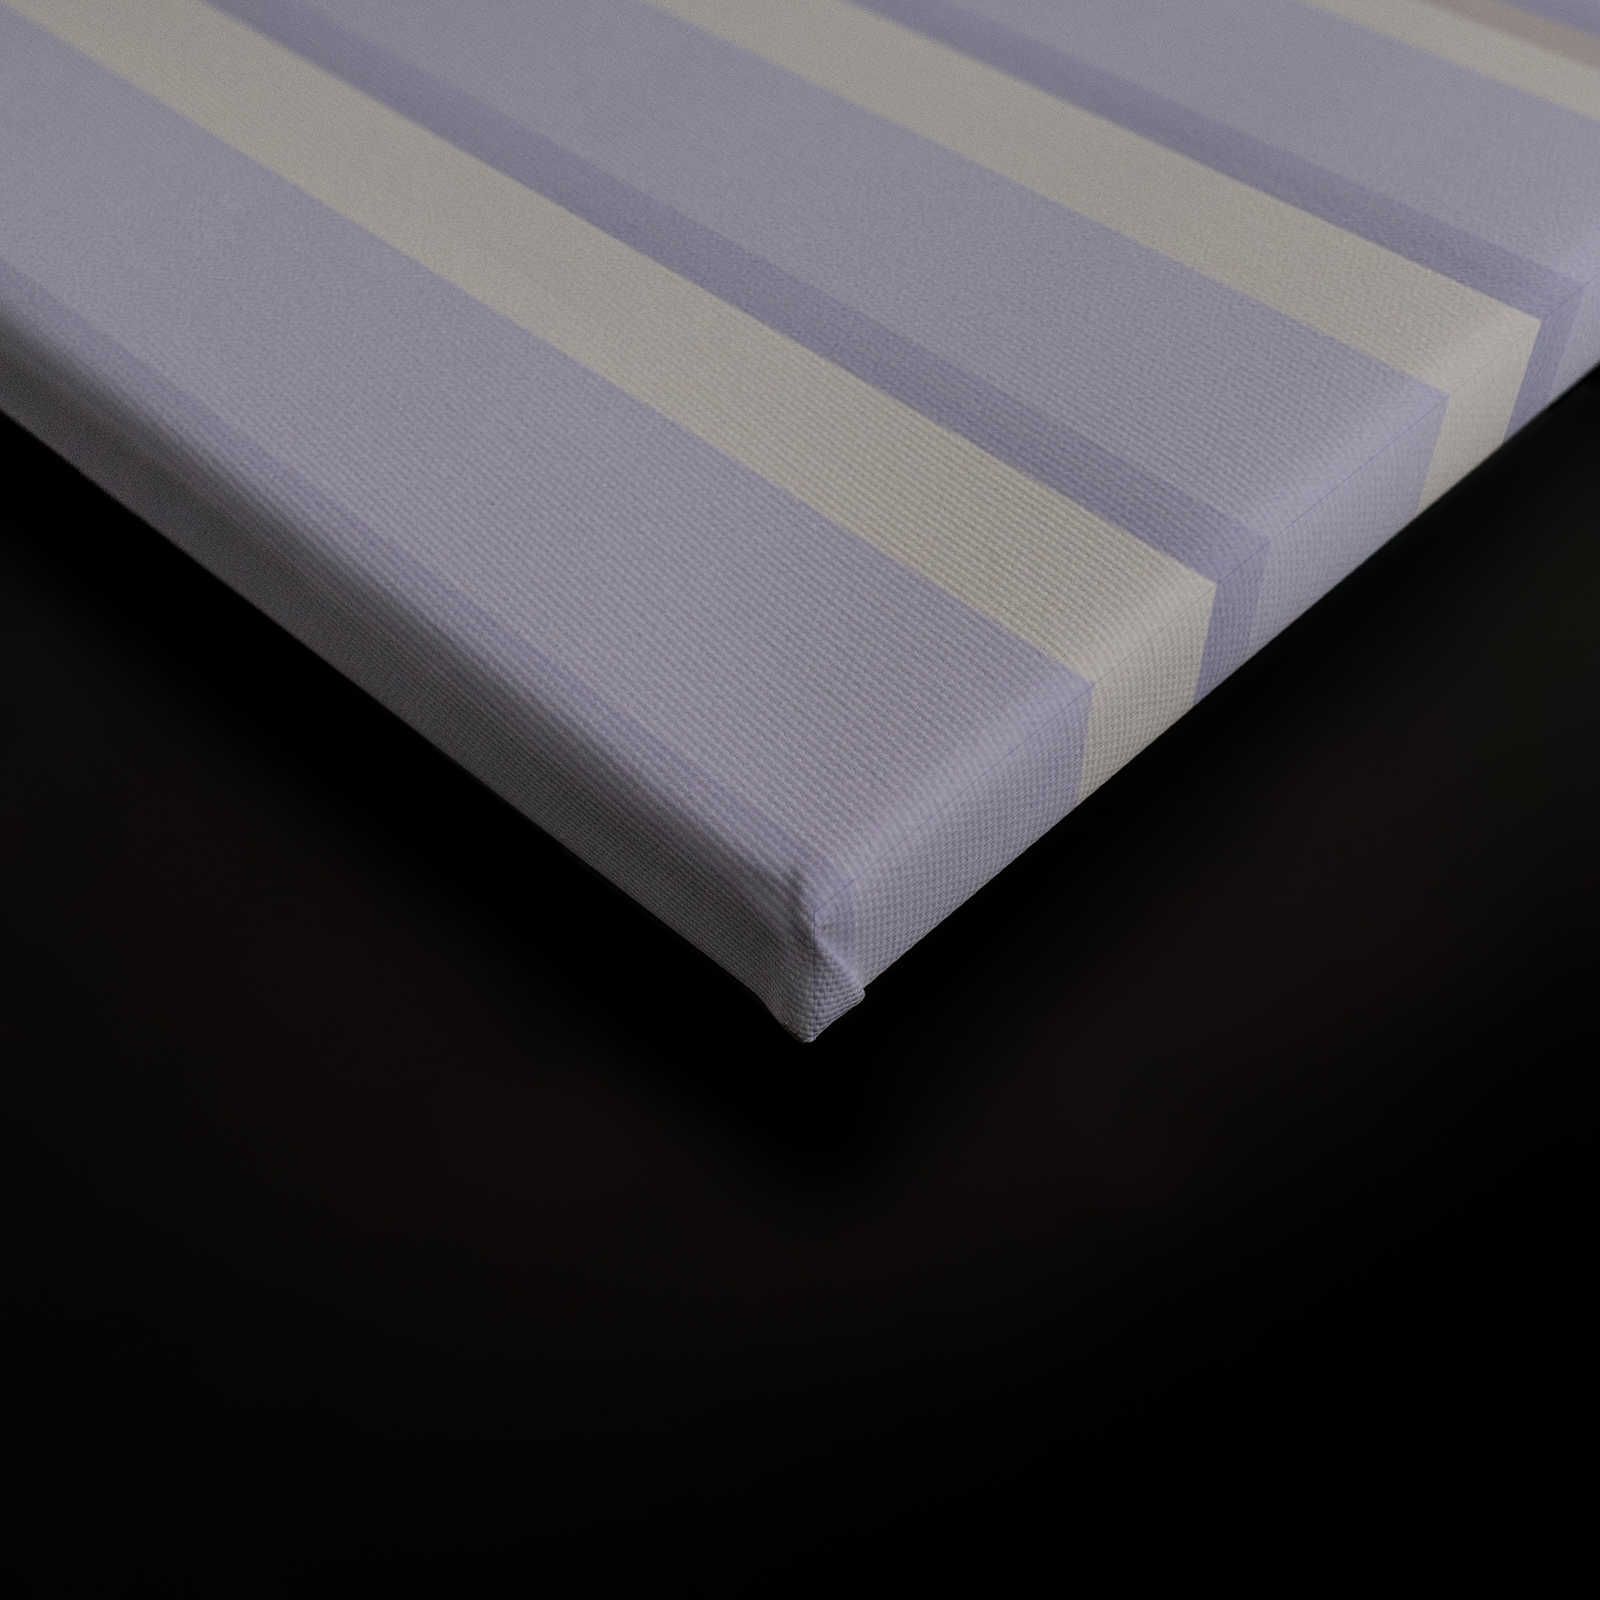             Illusion Room 1 - Quadro su tela con disegno a righe 3D in viola e grigio - 0,90 m x 0,60 m
        